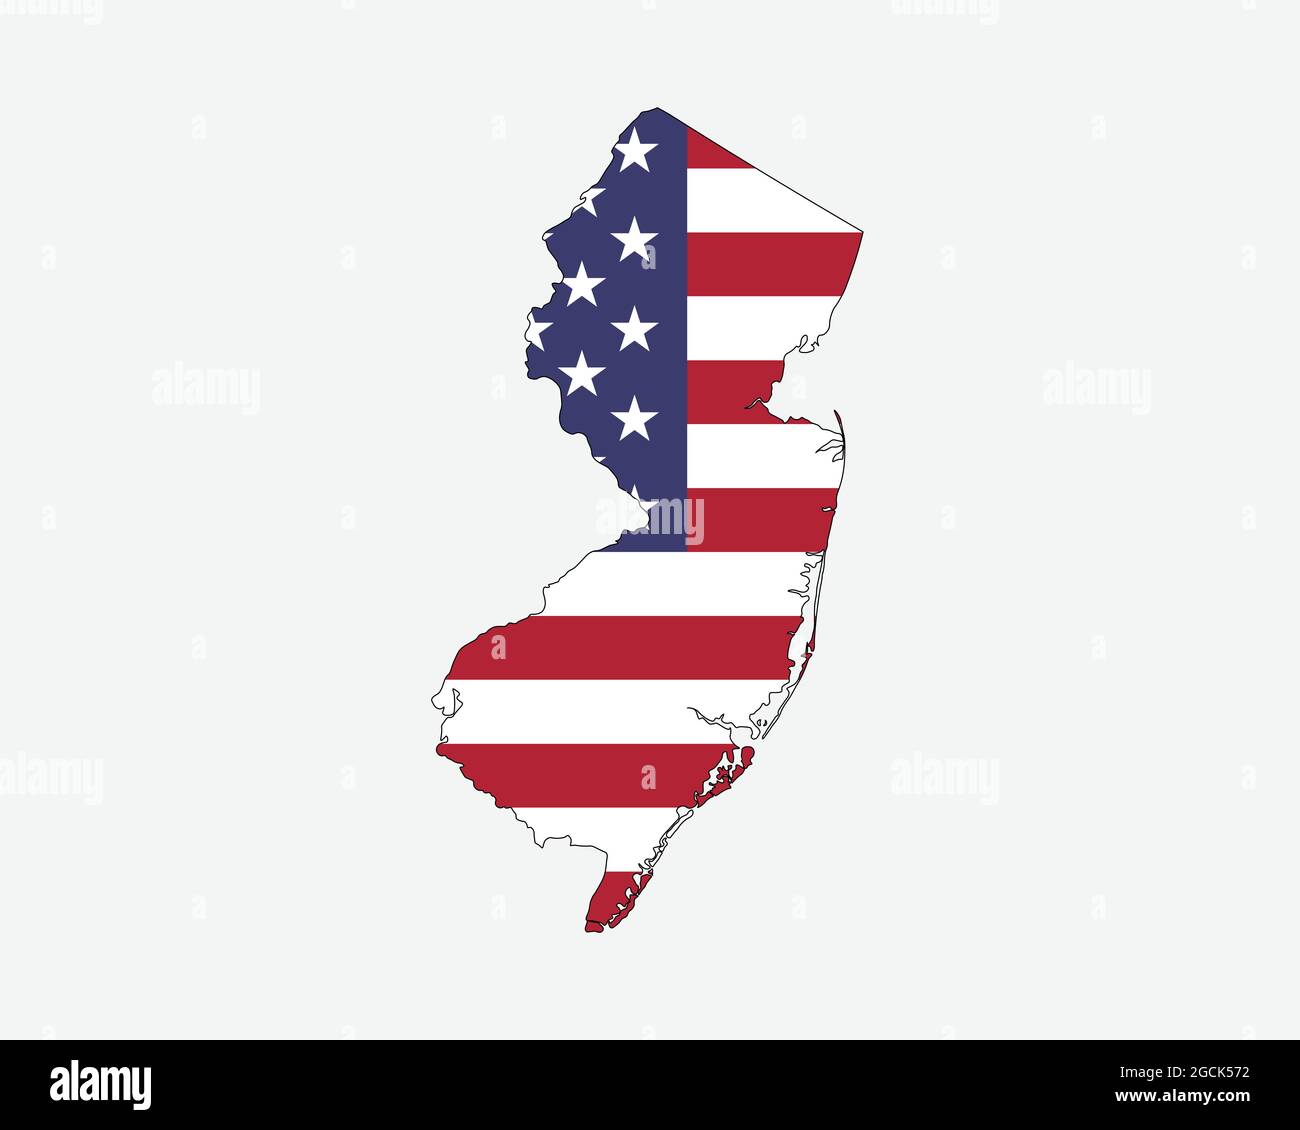 Mapa de Nueva Jersey con Bandera Americana. NJ, EE.UU. State Map on US Flag. Icono de recorte de gráficos vectoriales EPS Ilustración del Vector